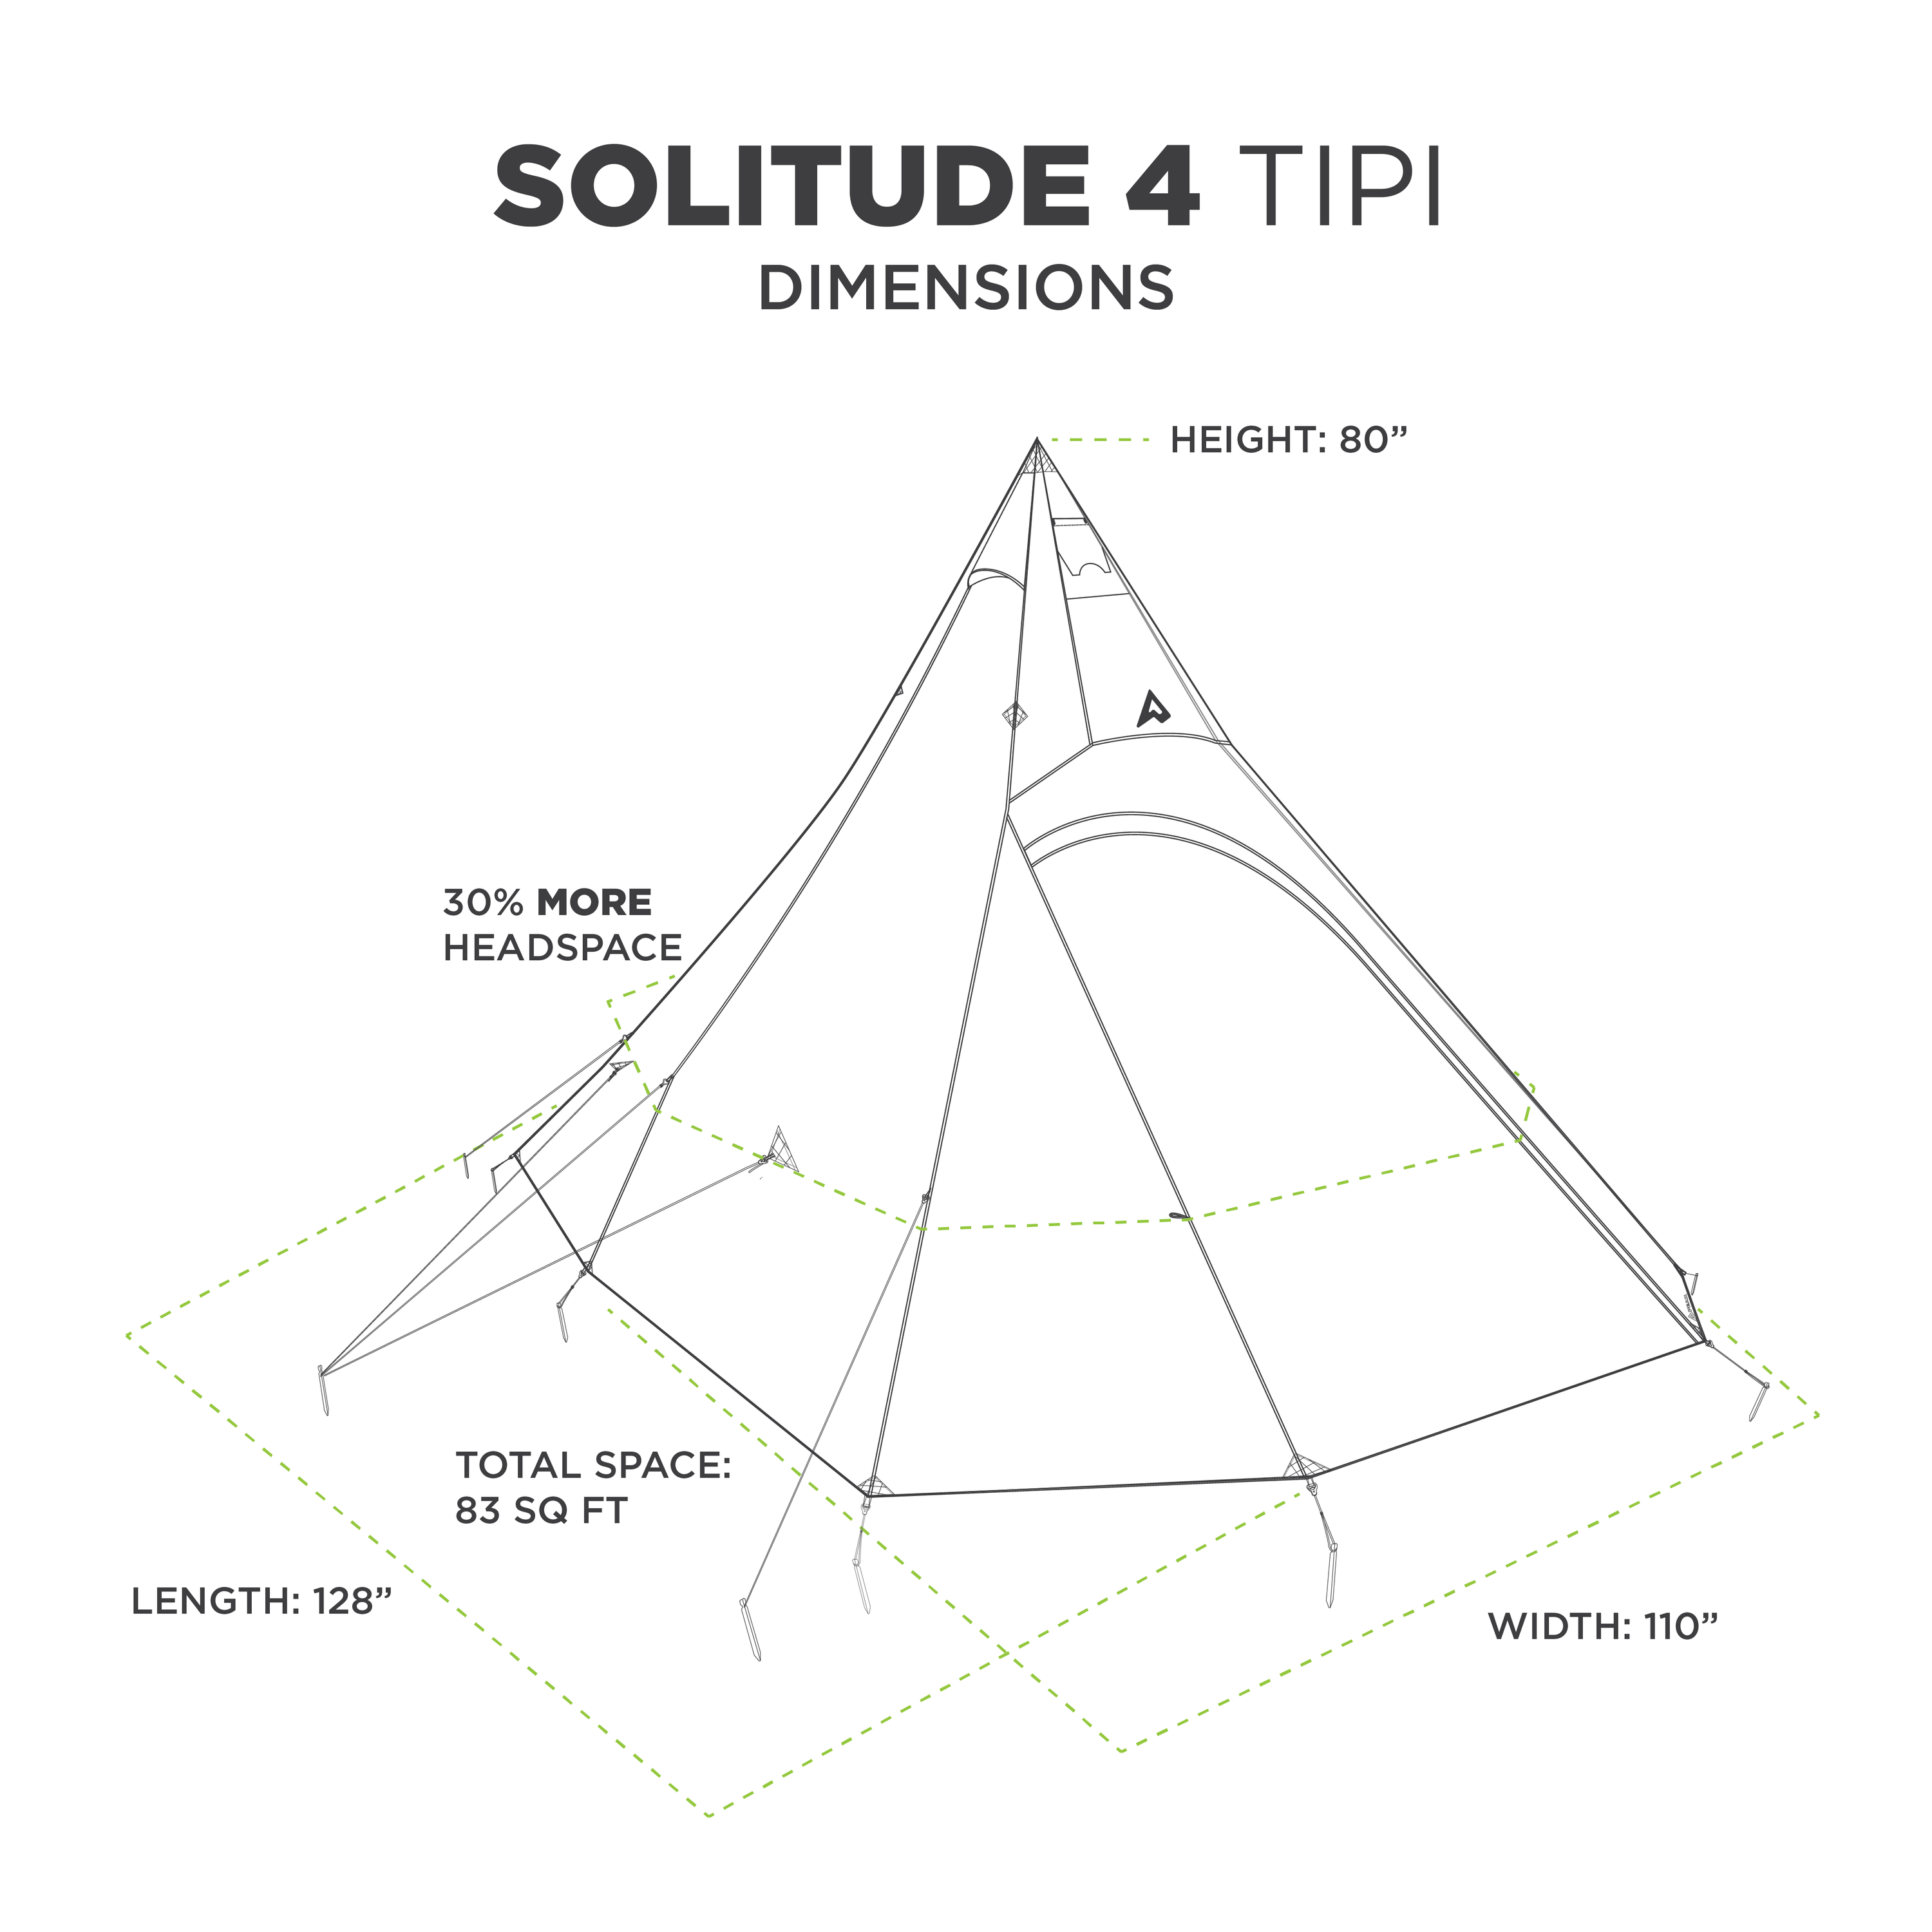 Solitude 4 Tipi